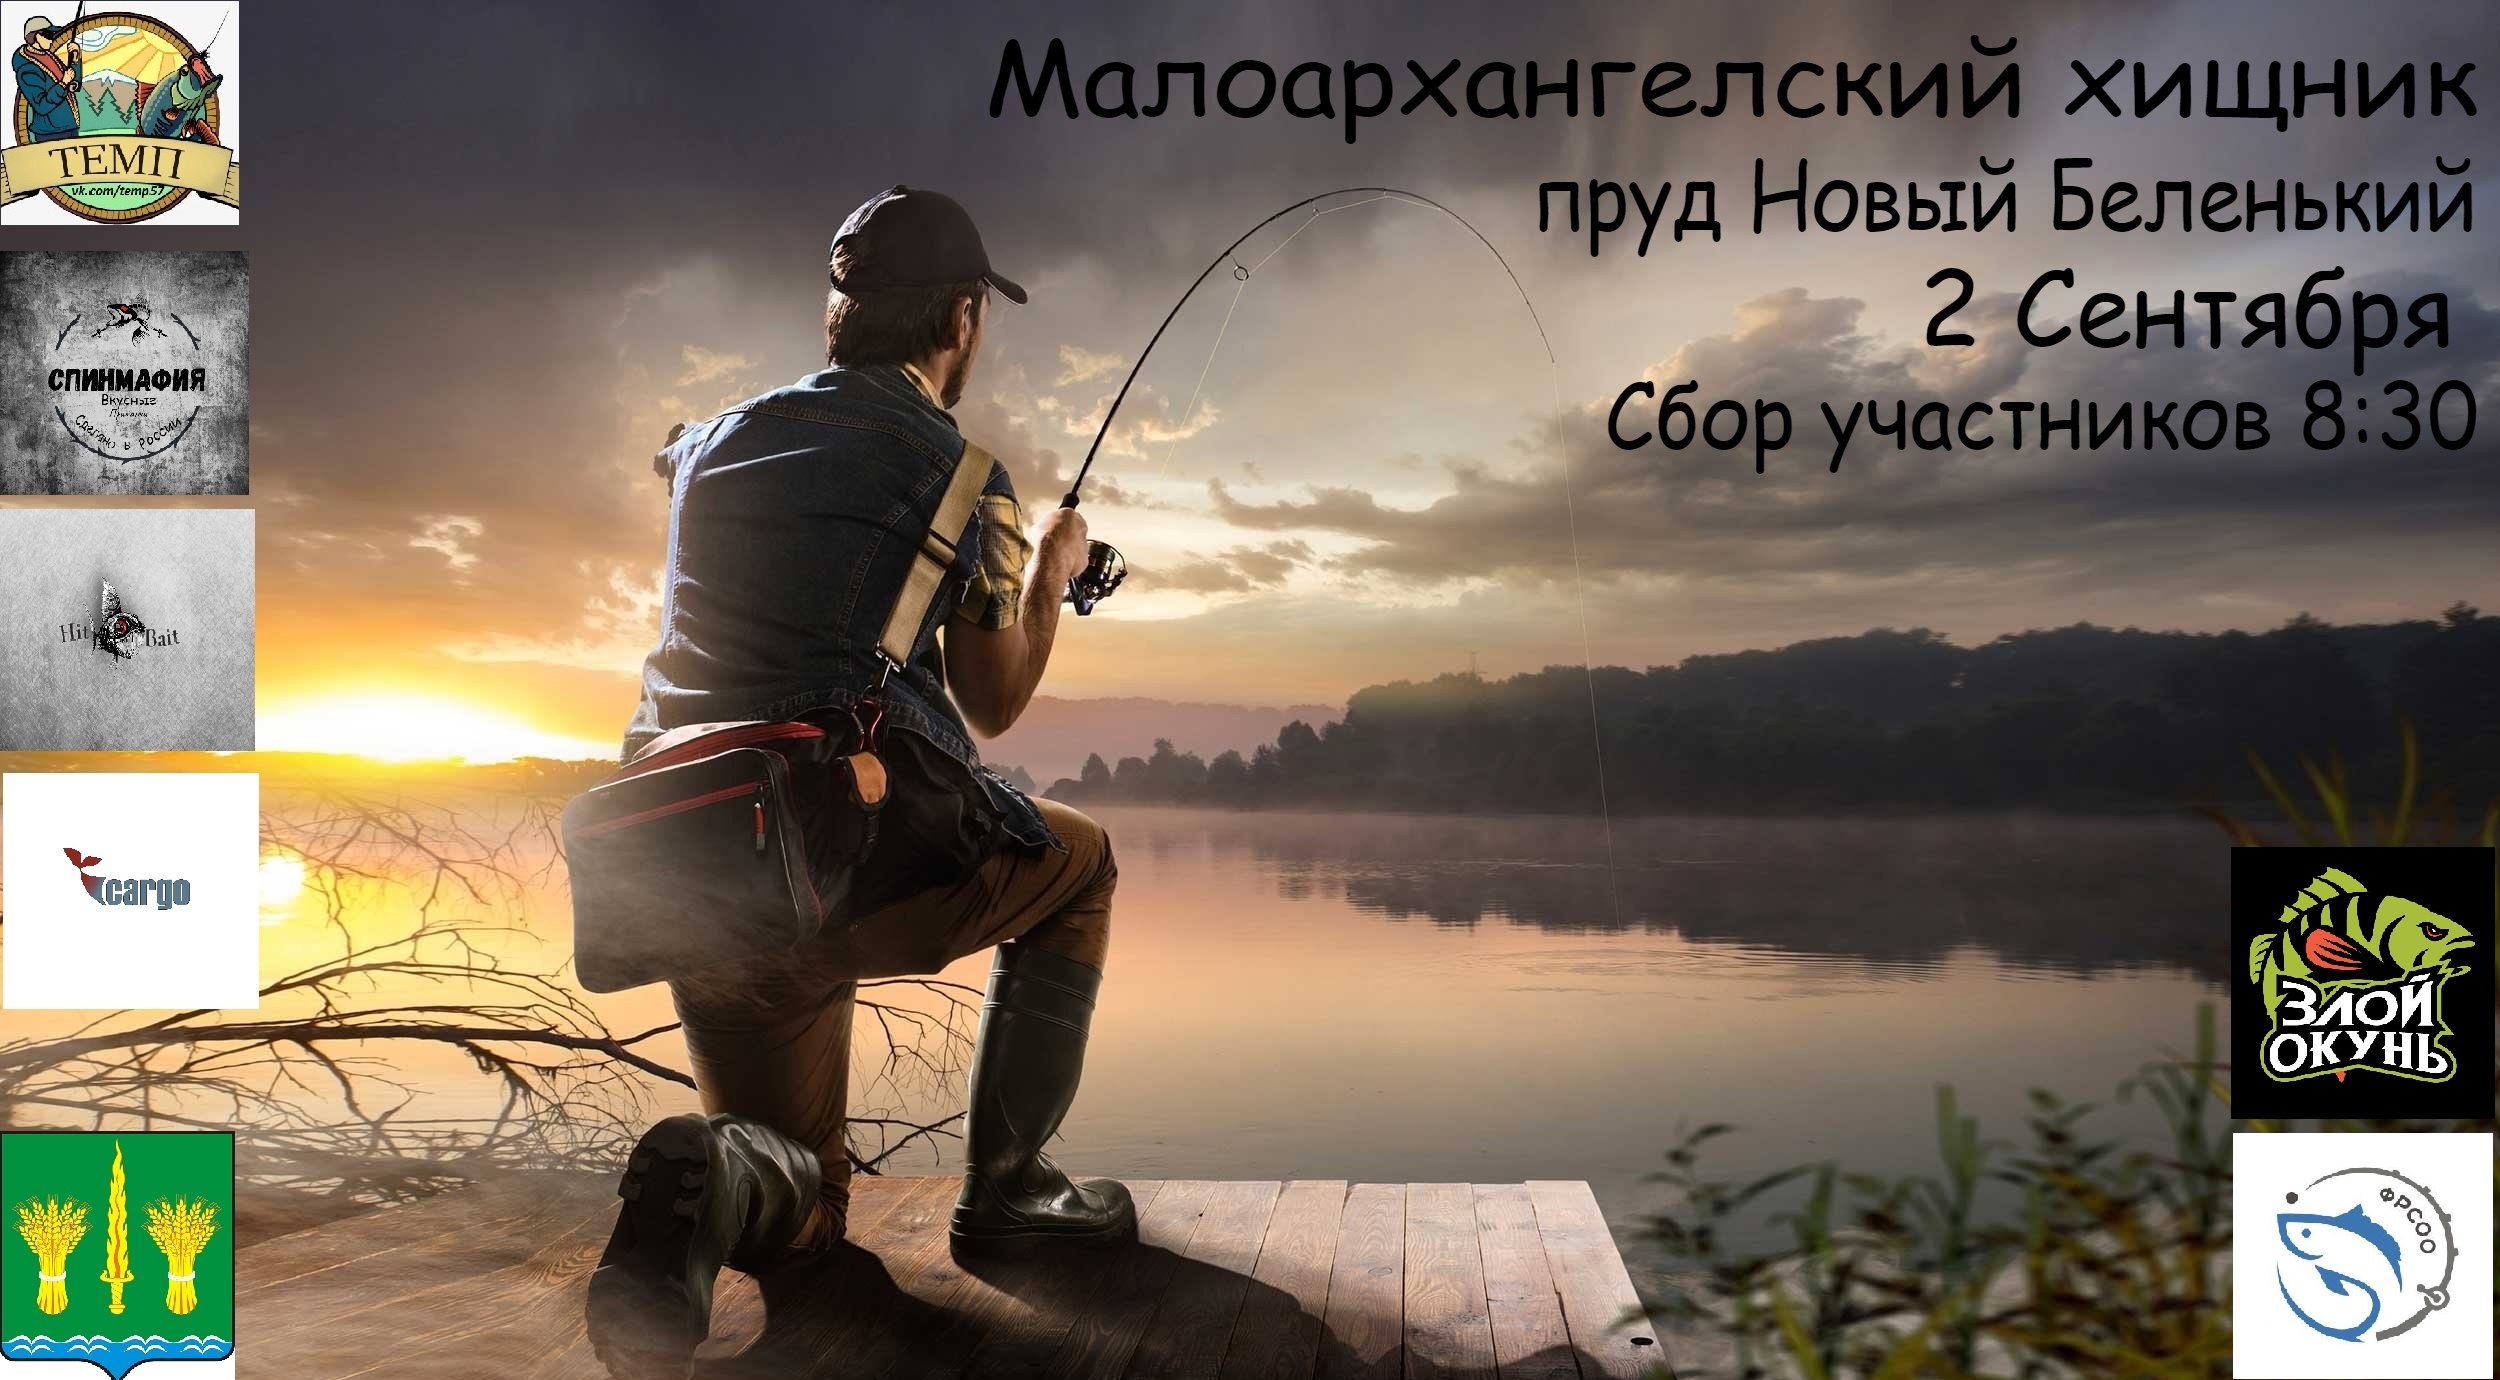 Турнир по рыбалке - "Малоархангельский хищник" , пруд "Новый беленький", 2 сентября 2023 года!